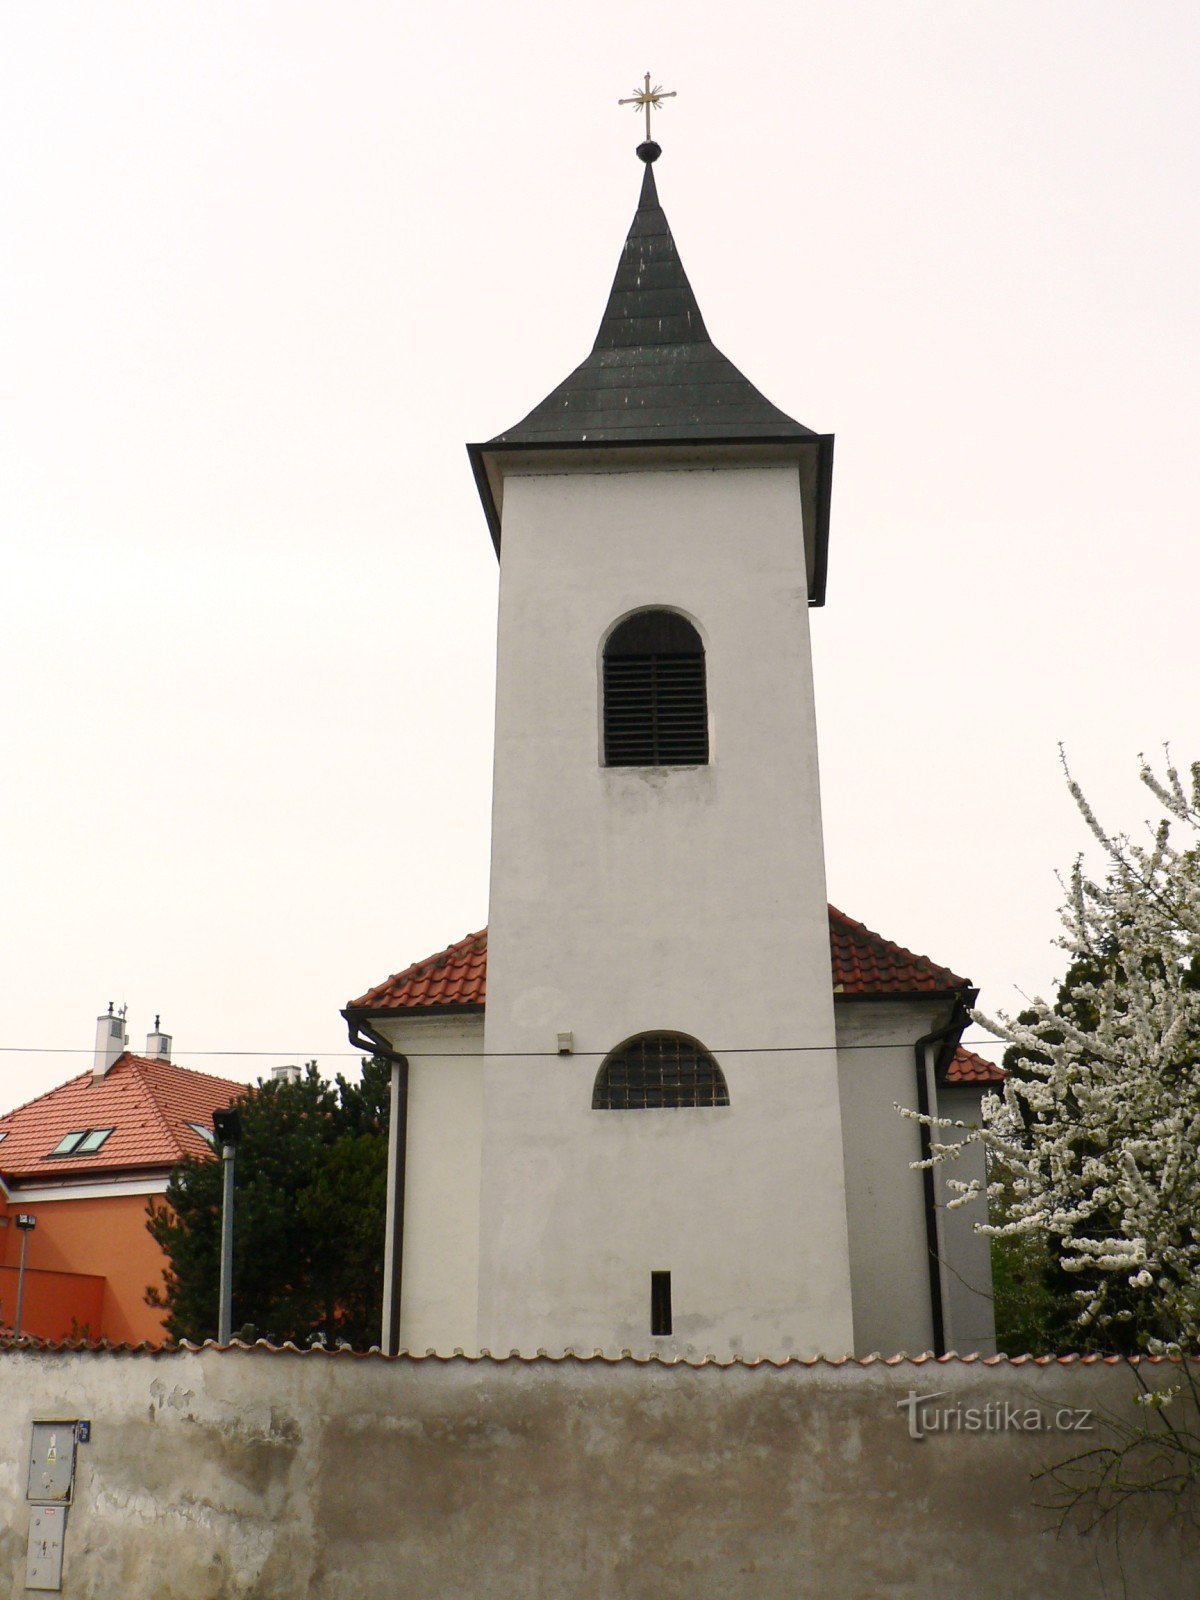 Hrnčíře (Praag) - Kerk van St. Procopius